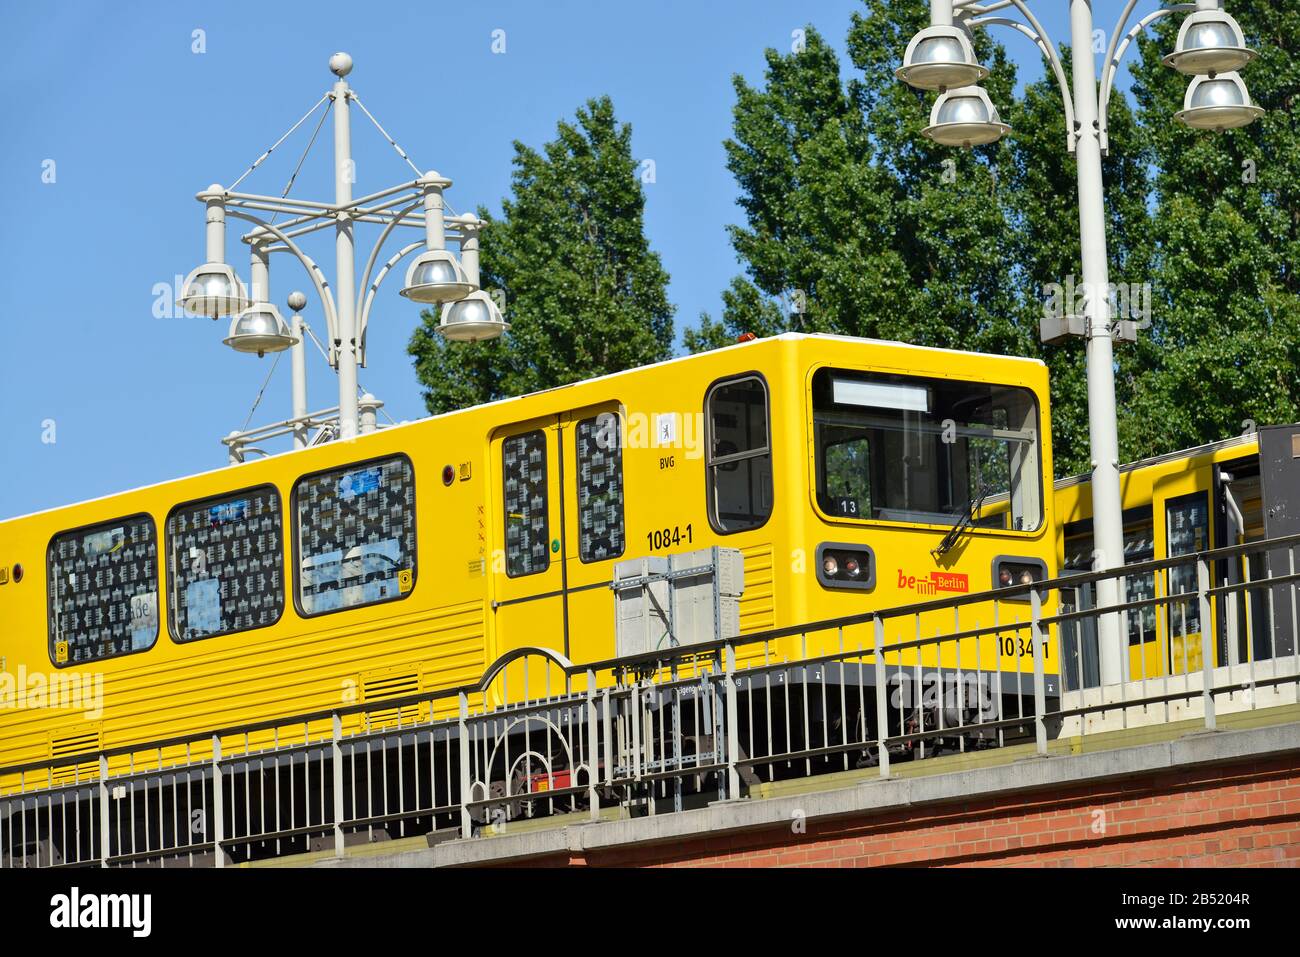 U-Bahnhof, Warschauer Strasse, Friedrichshain, Berlin, Deutschland Stock Photo